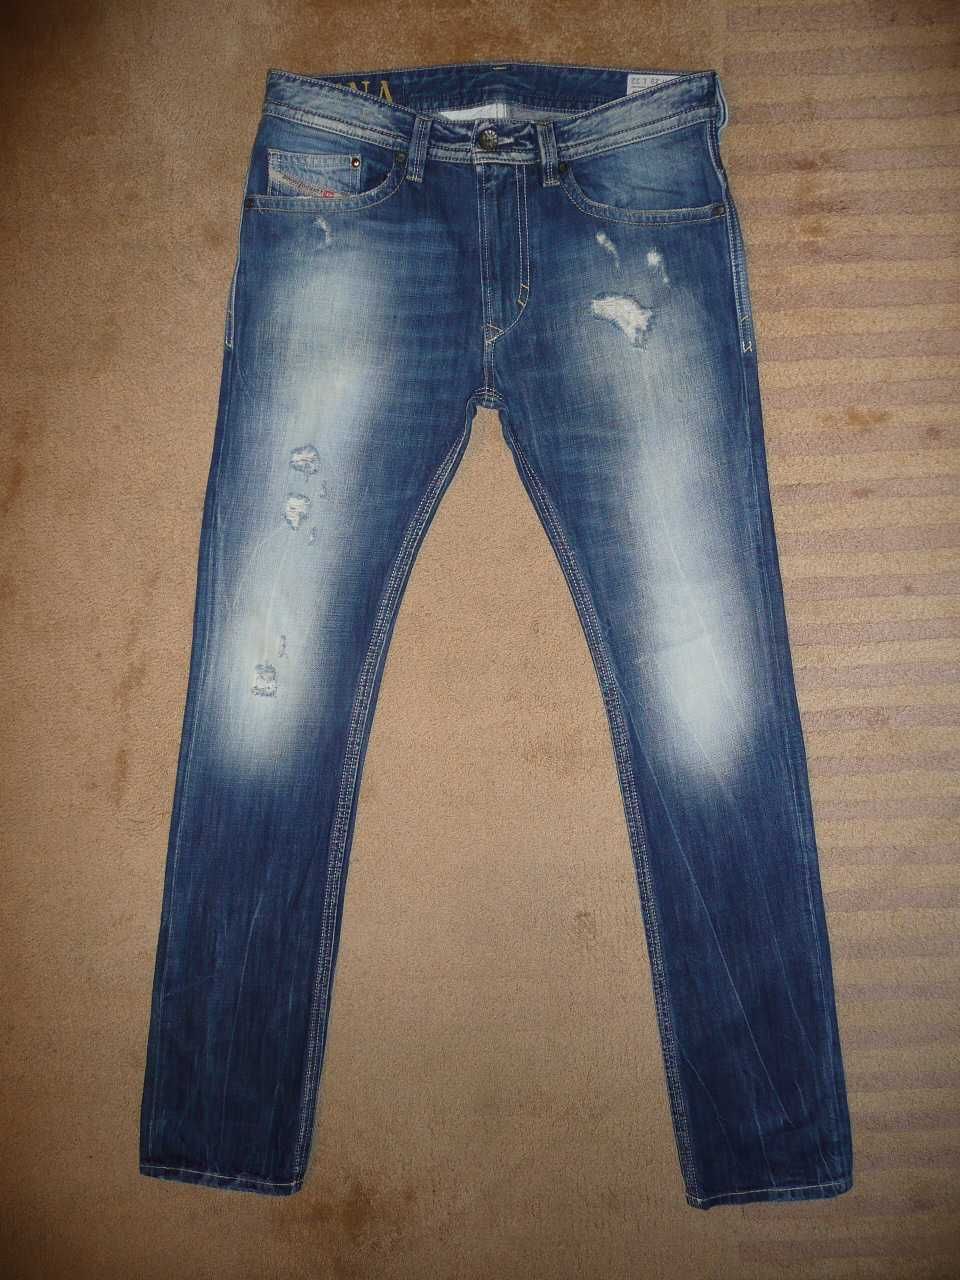 Spodnie dżinsy DIESEL W29/L32=42/108cm jeansy